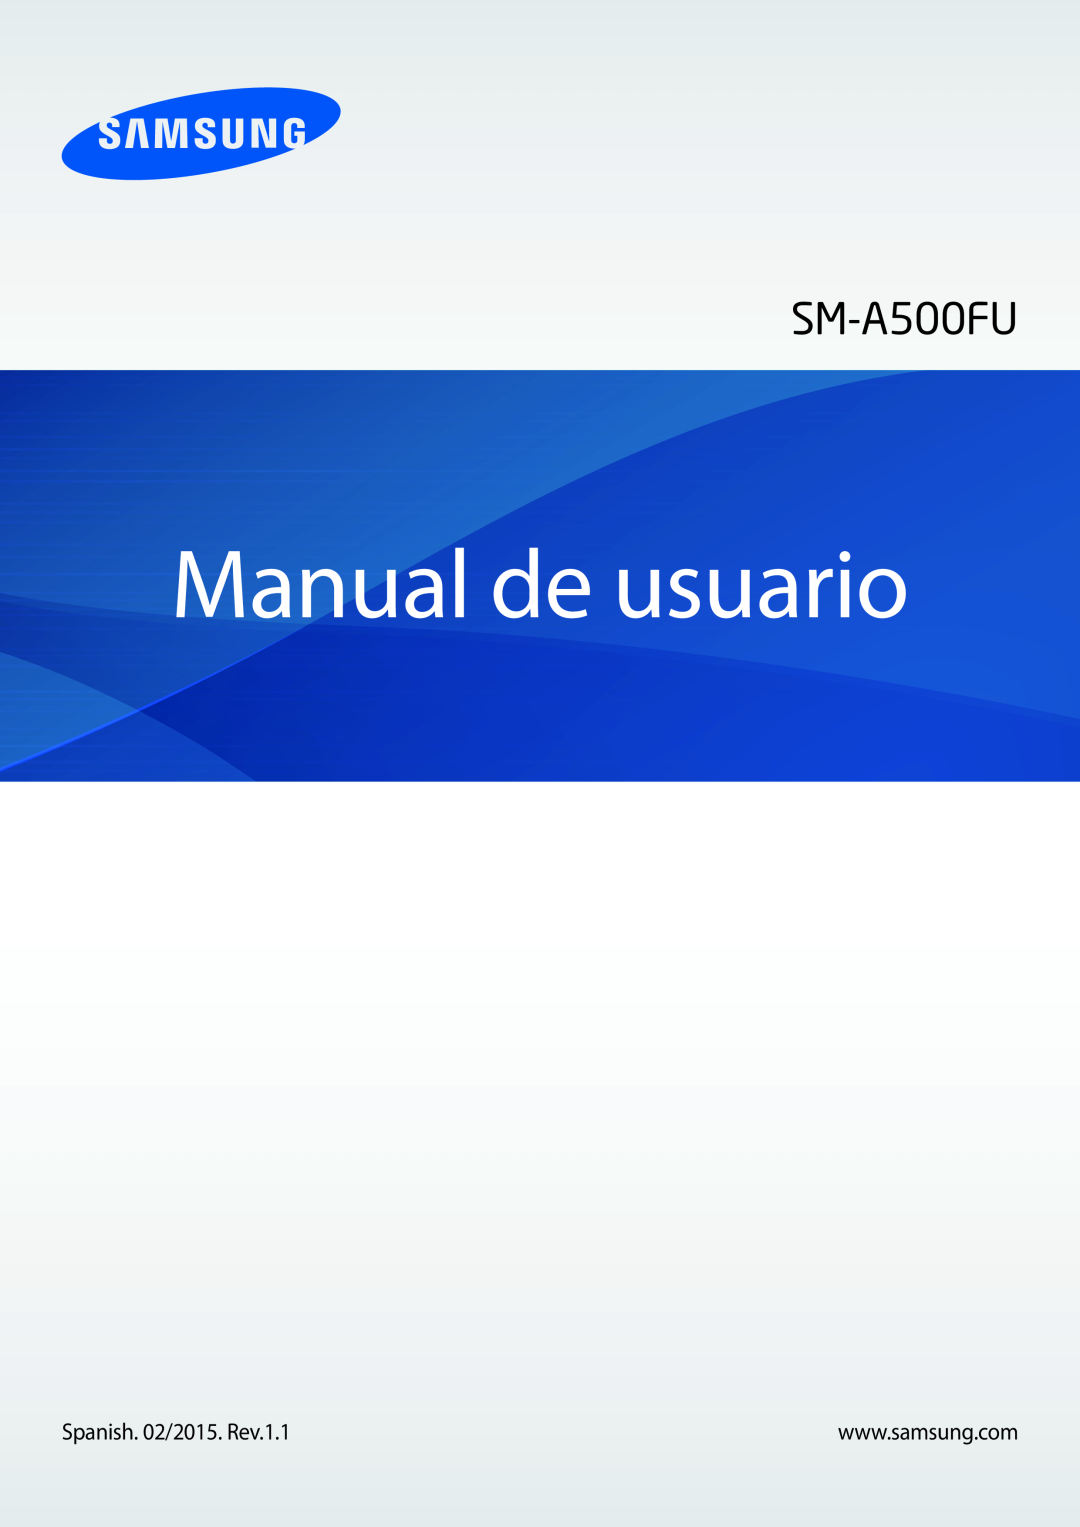 Samsung SM-A500FZSUPHE, SM-A500FZDUPHE, SM-A500FZKUPHE manual Manual de usuario, SM-A500FU 